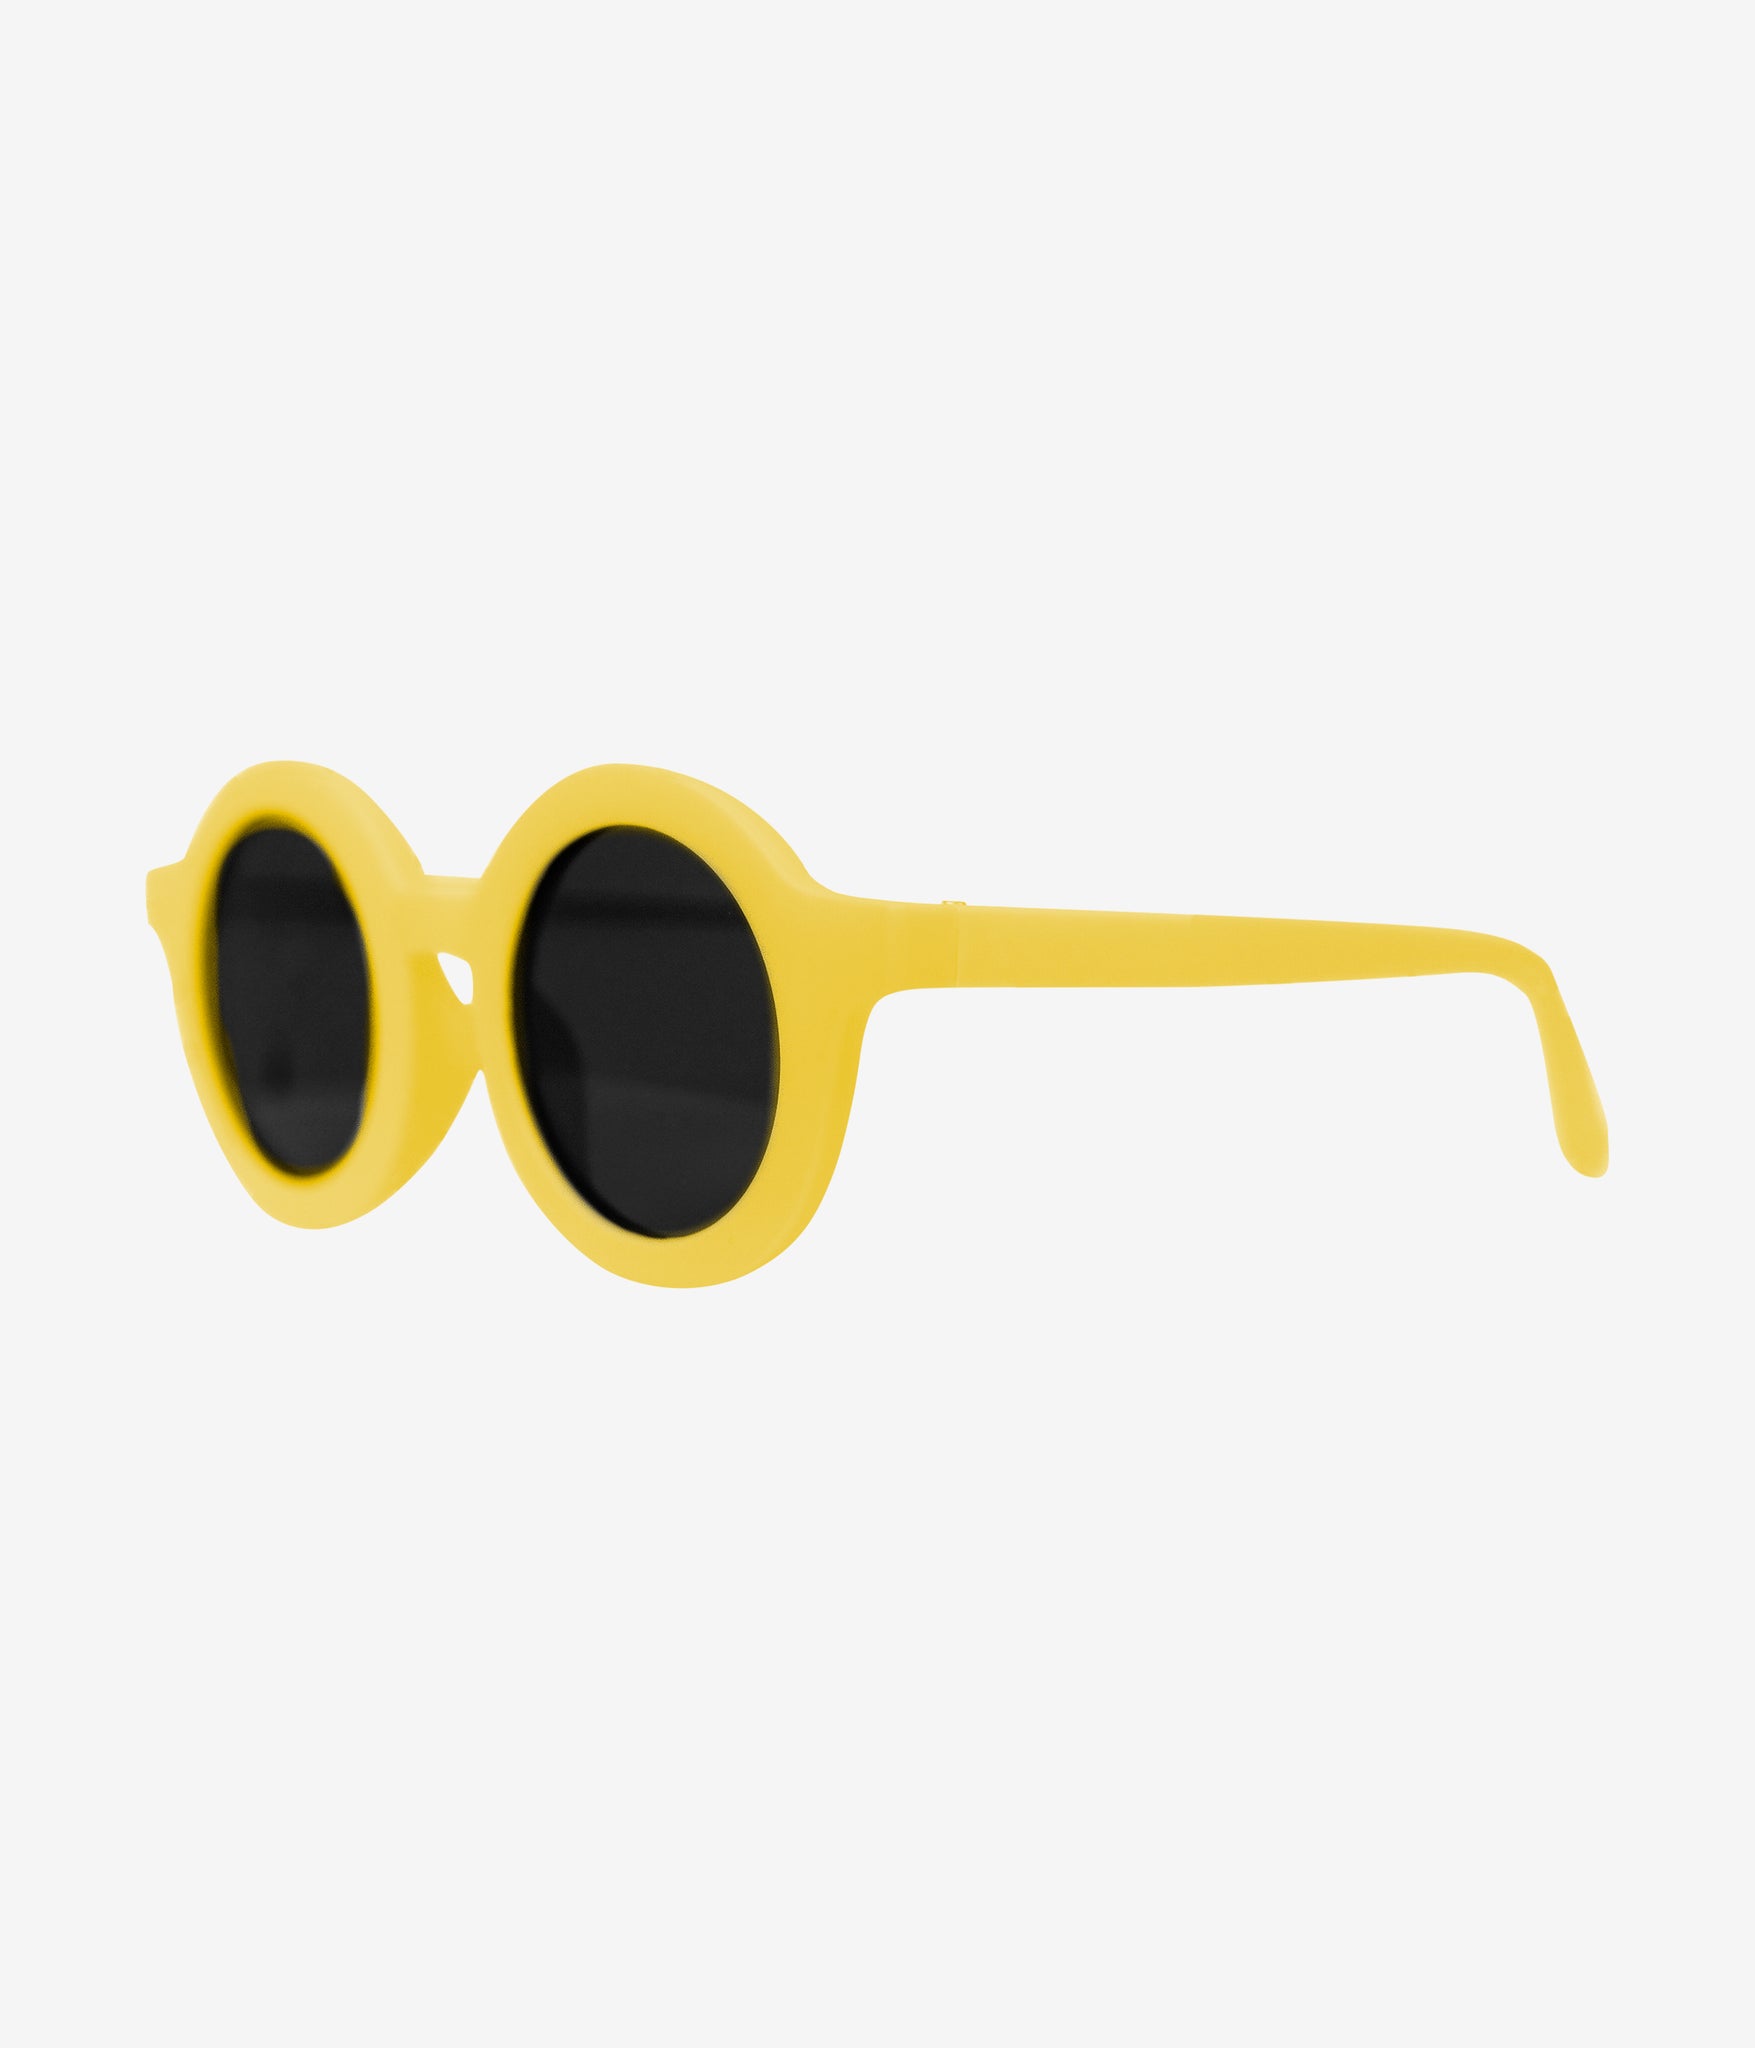 Round sunglasses - yellow